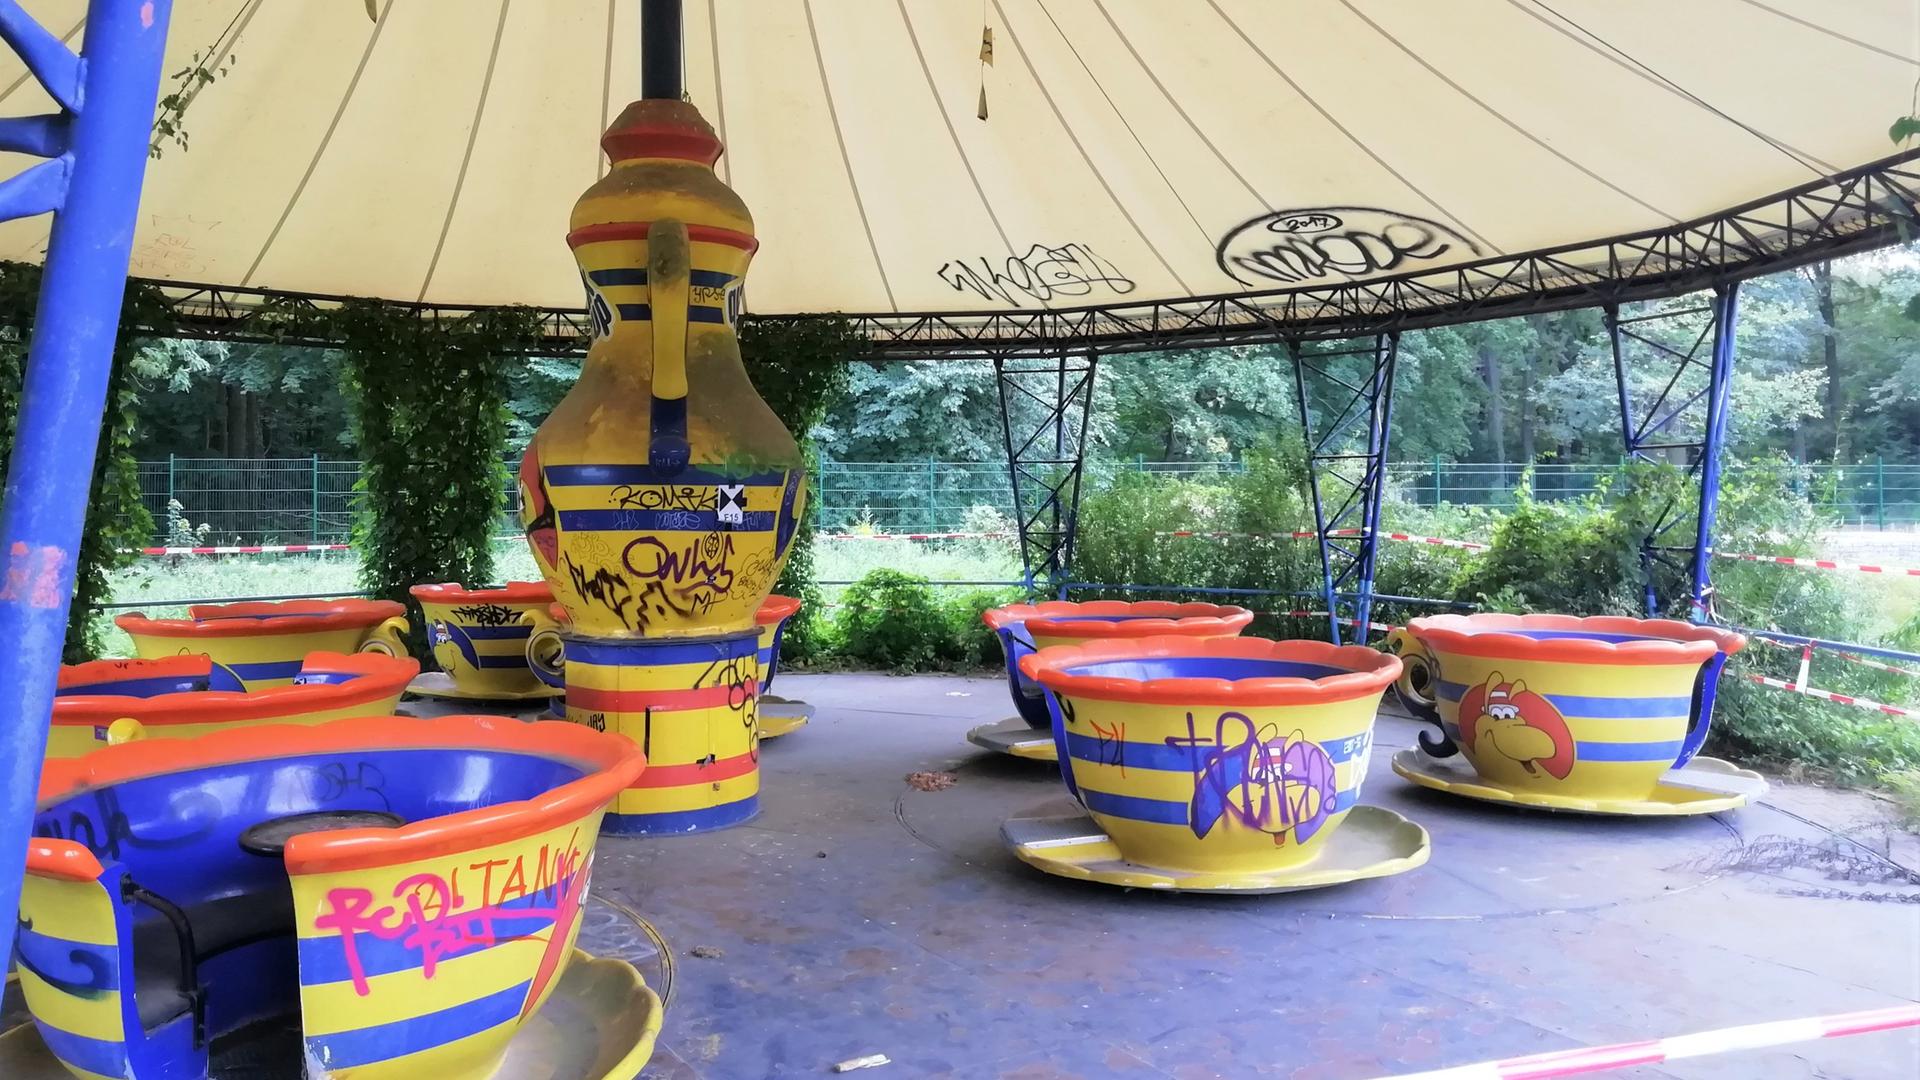 Ein Karussell im Spreepark besteht aus Tassen als Gondeln und einer stilisierten Teekann im Zentrum, um die sich die Tassen drehen. Das Service ist in den Farben Gelb, Rot und Blau gehalten